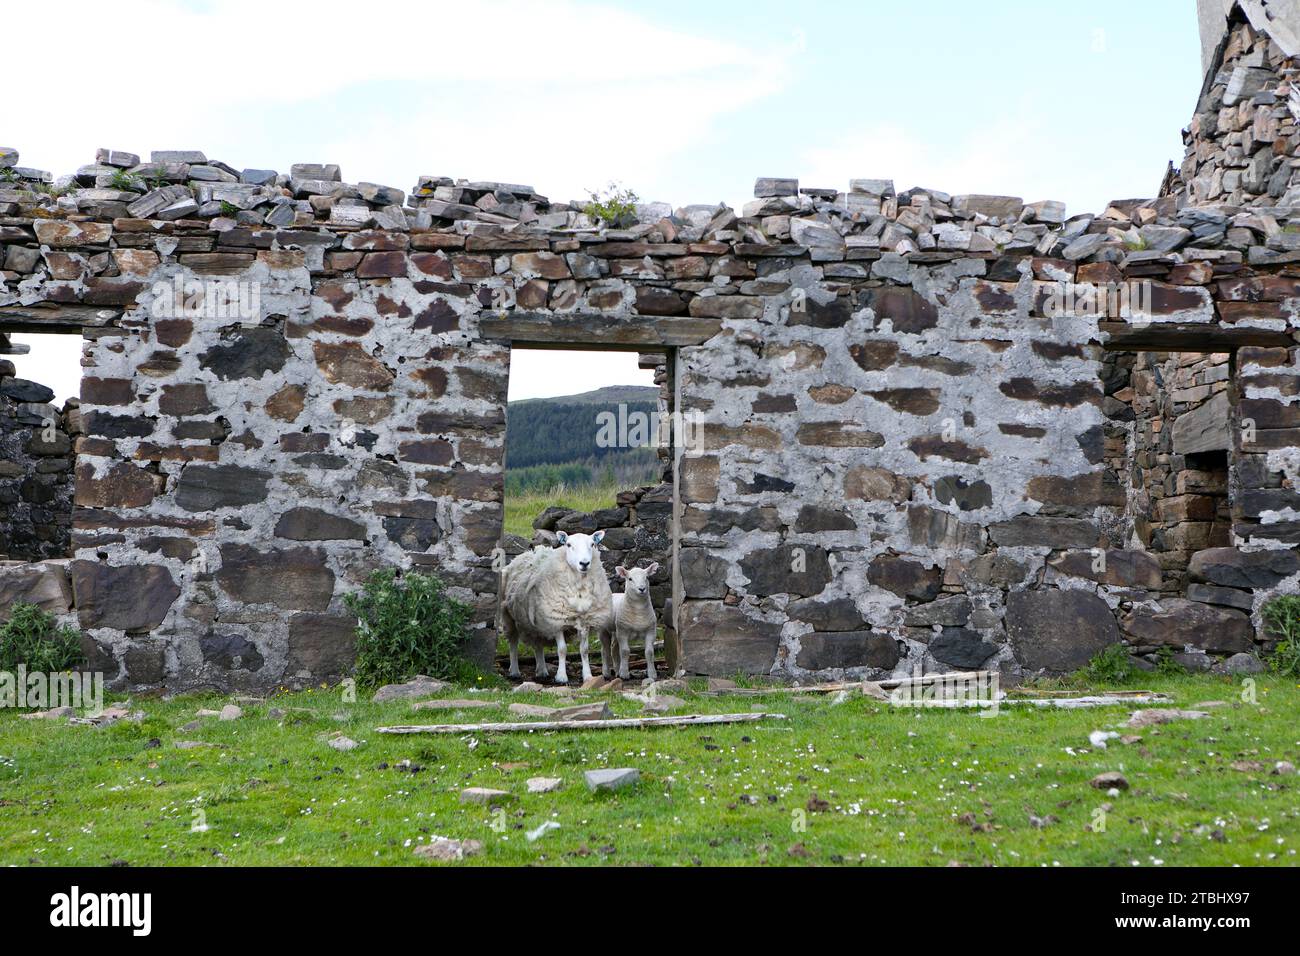 Shiaba, un villaggio abbandonato a causa delle autorizzazioni delle Highland, sull'isola di Mull in Scozia Foto Stock